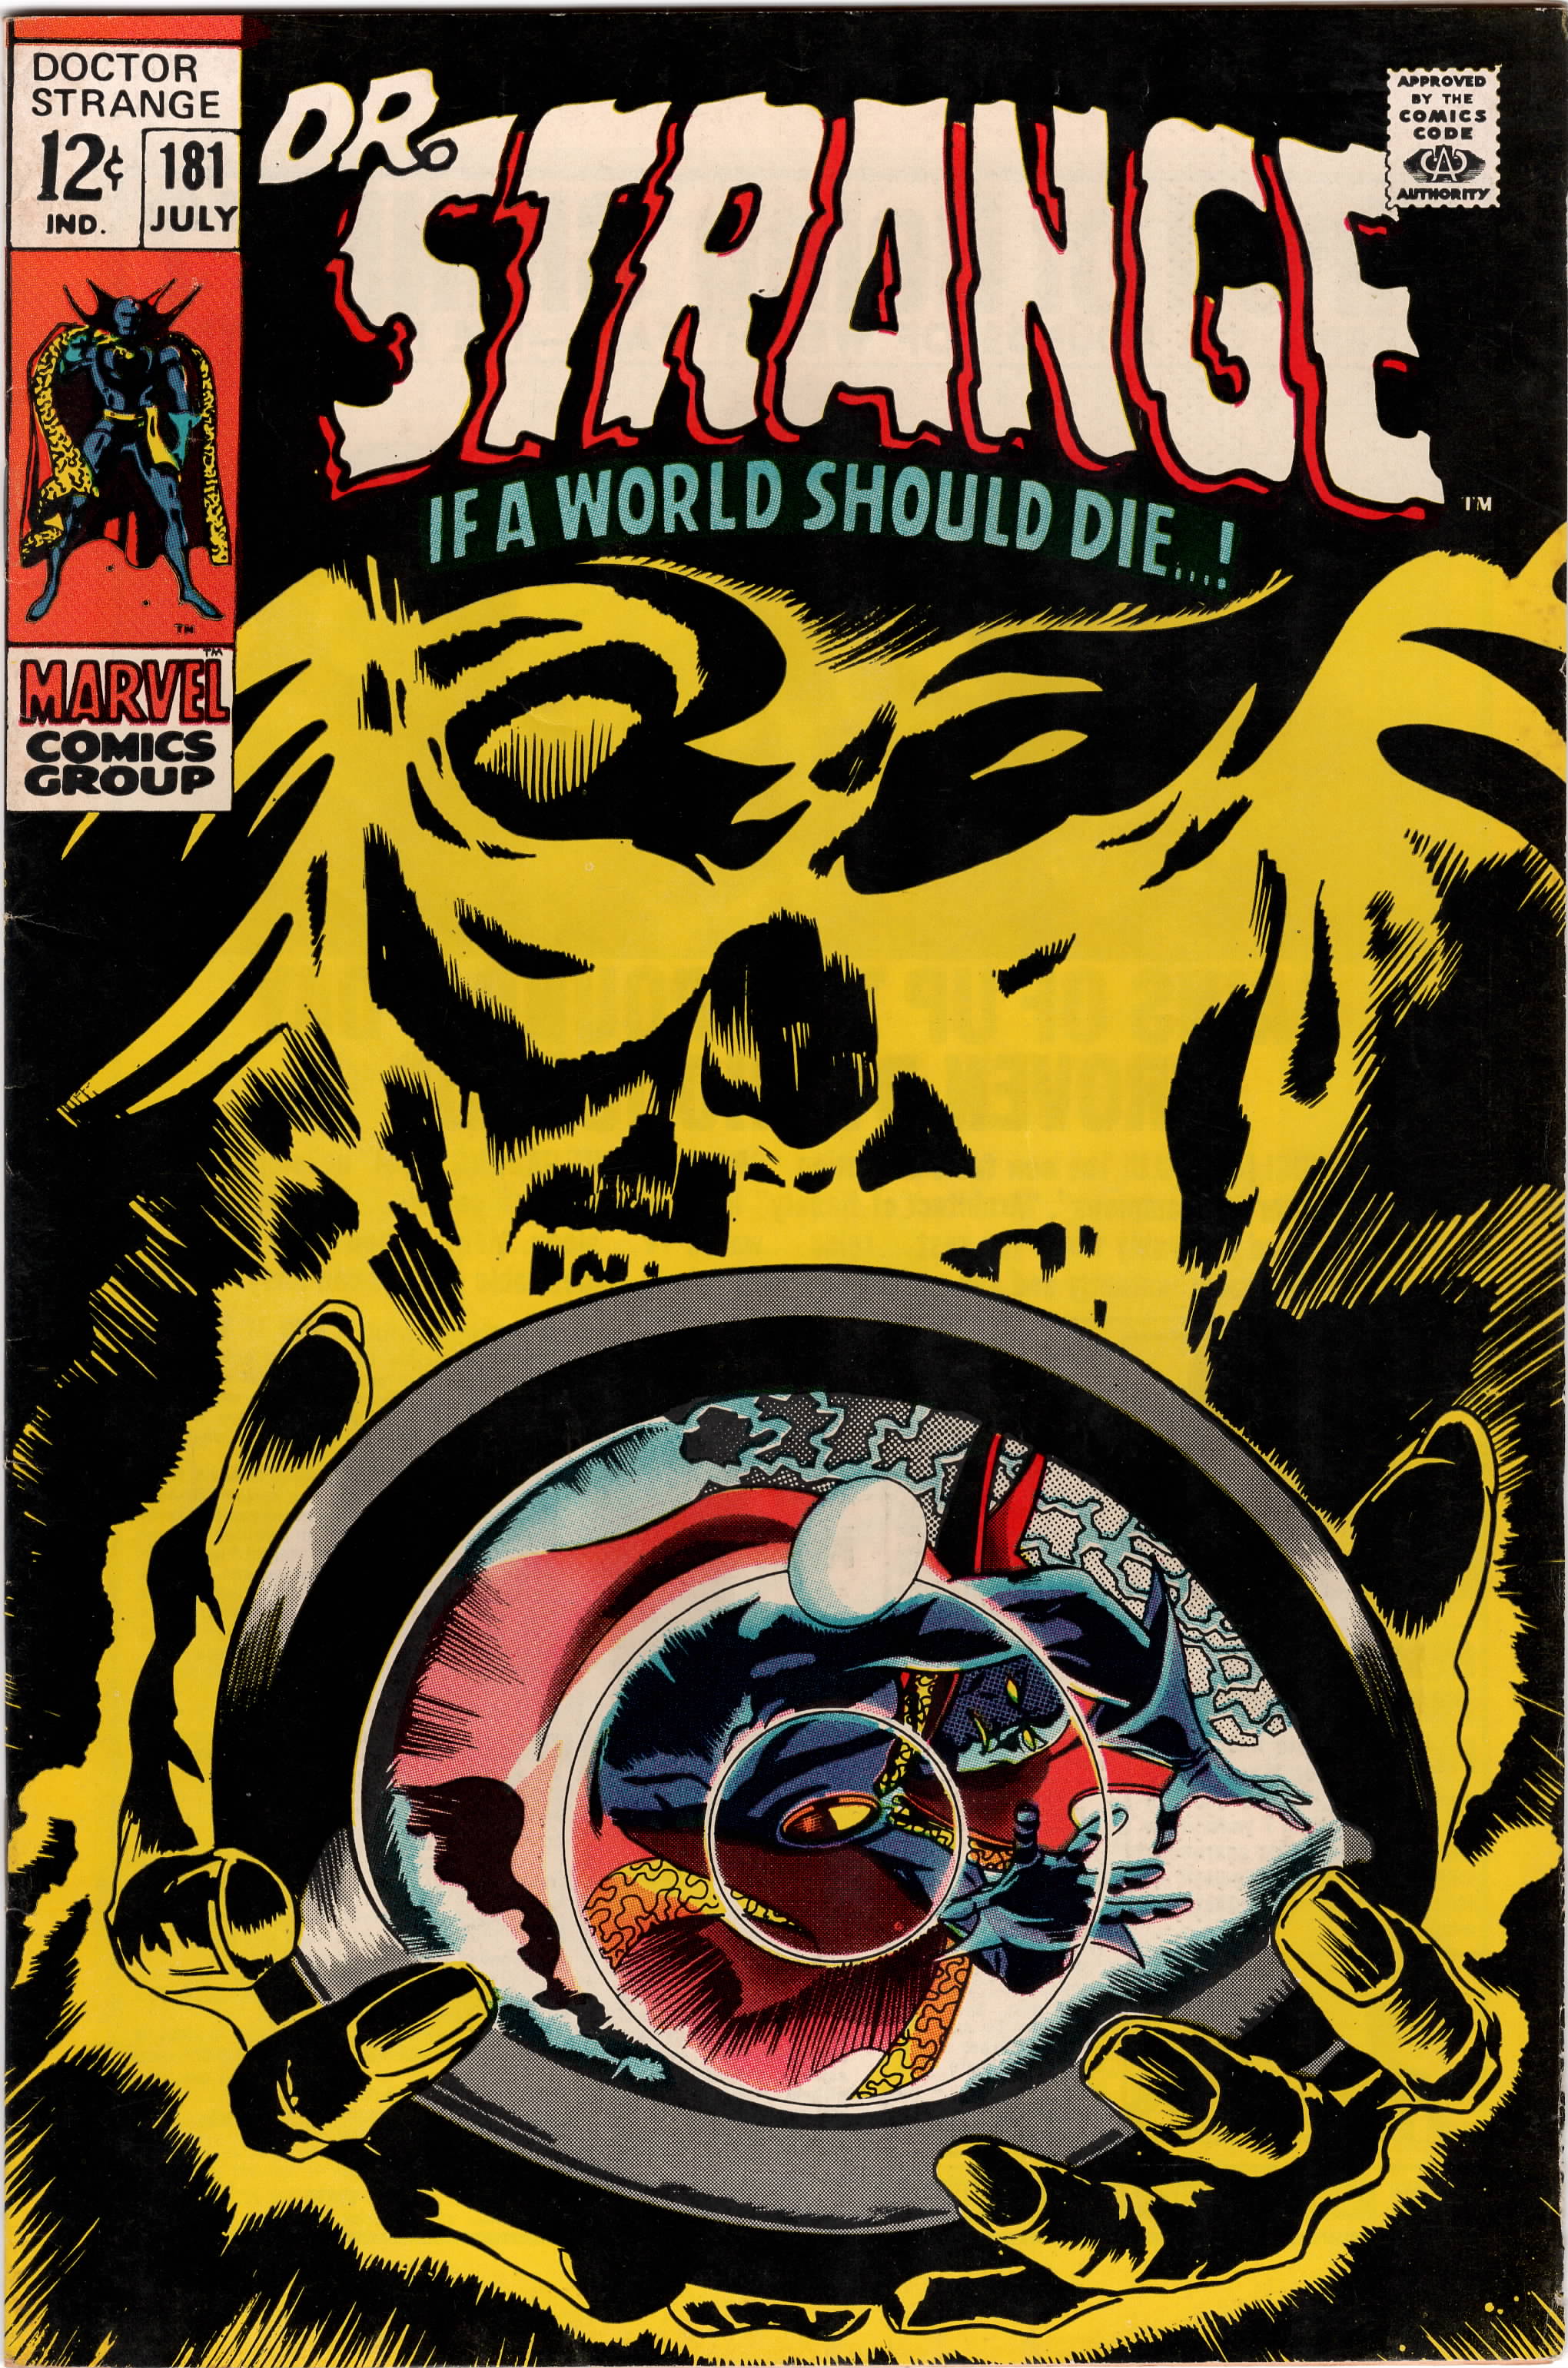 Doctor Strange #181